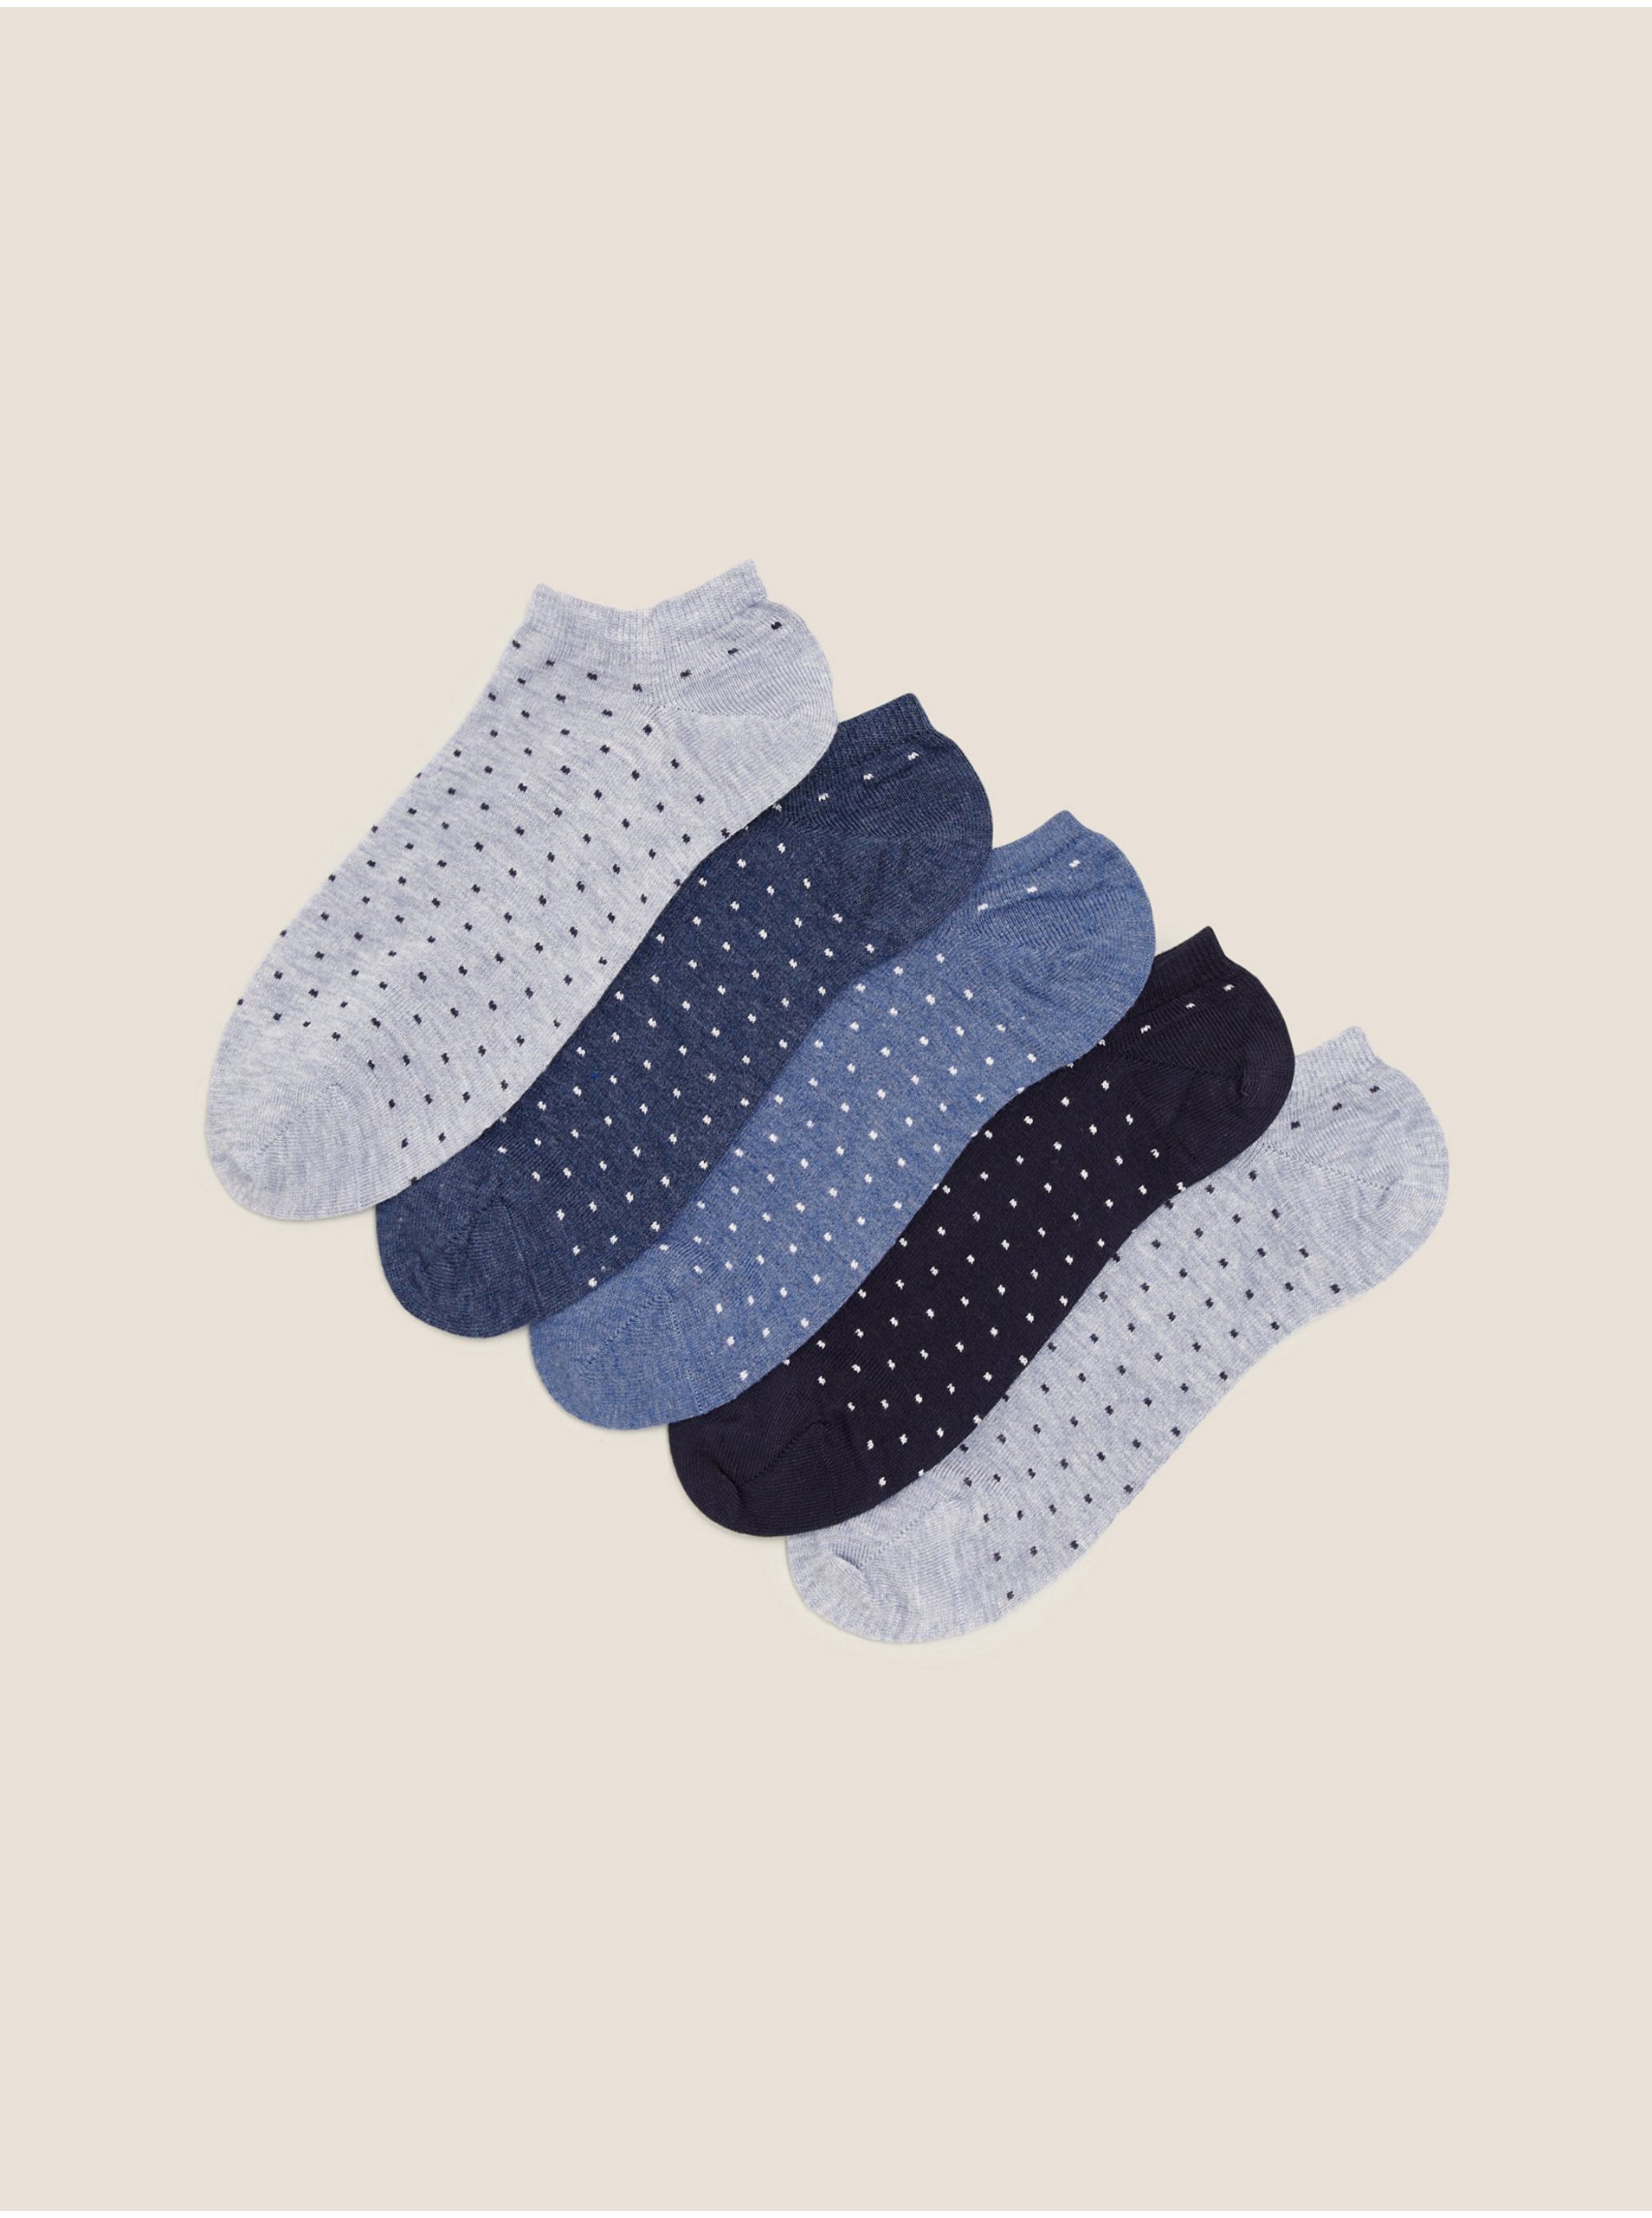 E-shop Sada pěti párů dámských puntíkovaných ponožek v modré, šedé a černé barvě Marks & Spencer Sumptuously Soft™